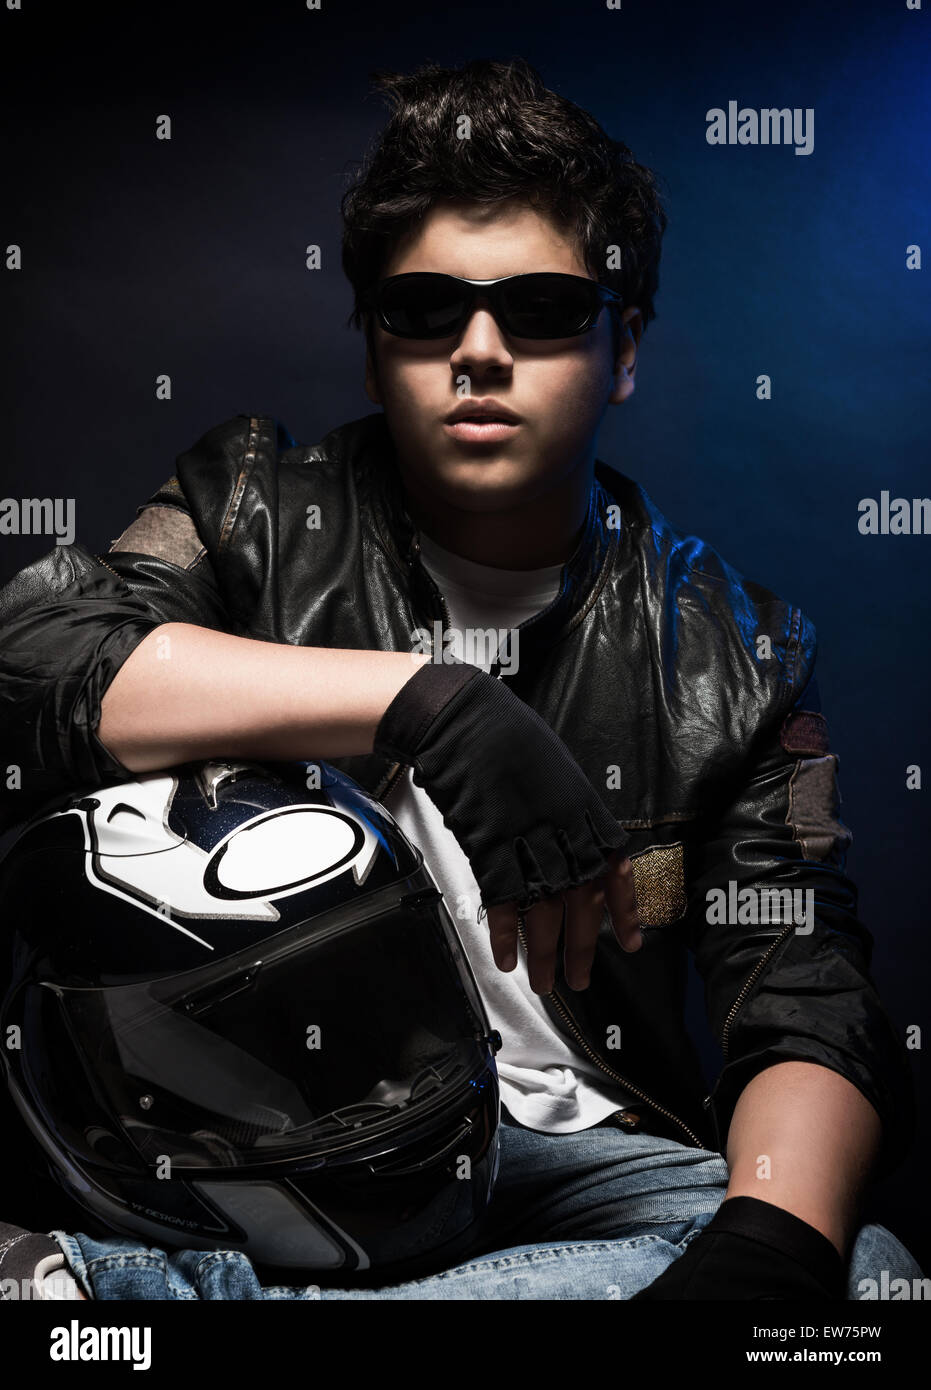 Portrait de joli garçon portant des lunettes de soleil, veste en cuir élégant et holding helmet posant dans le studio sur fond bleu Banque D'Images